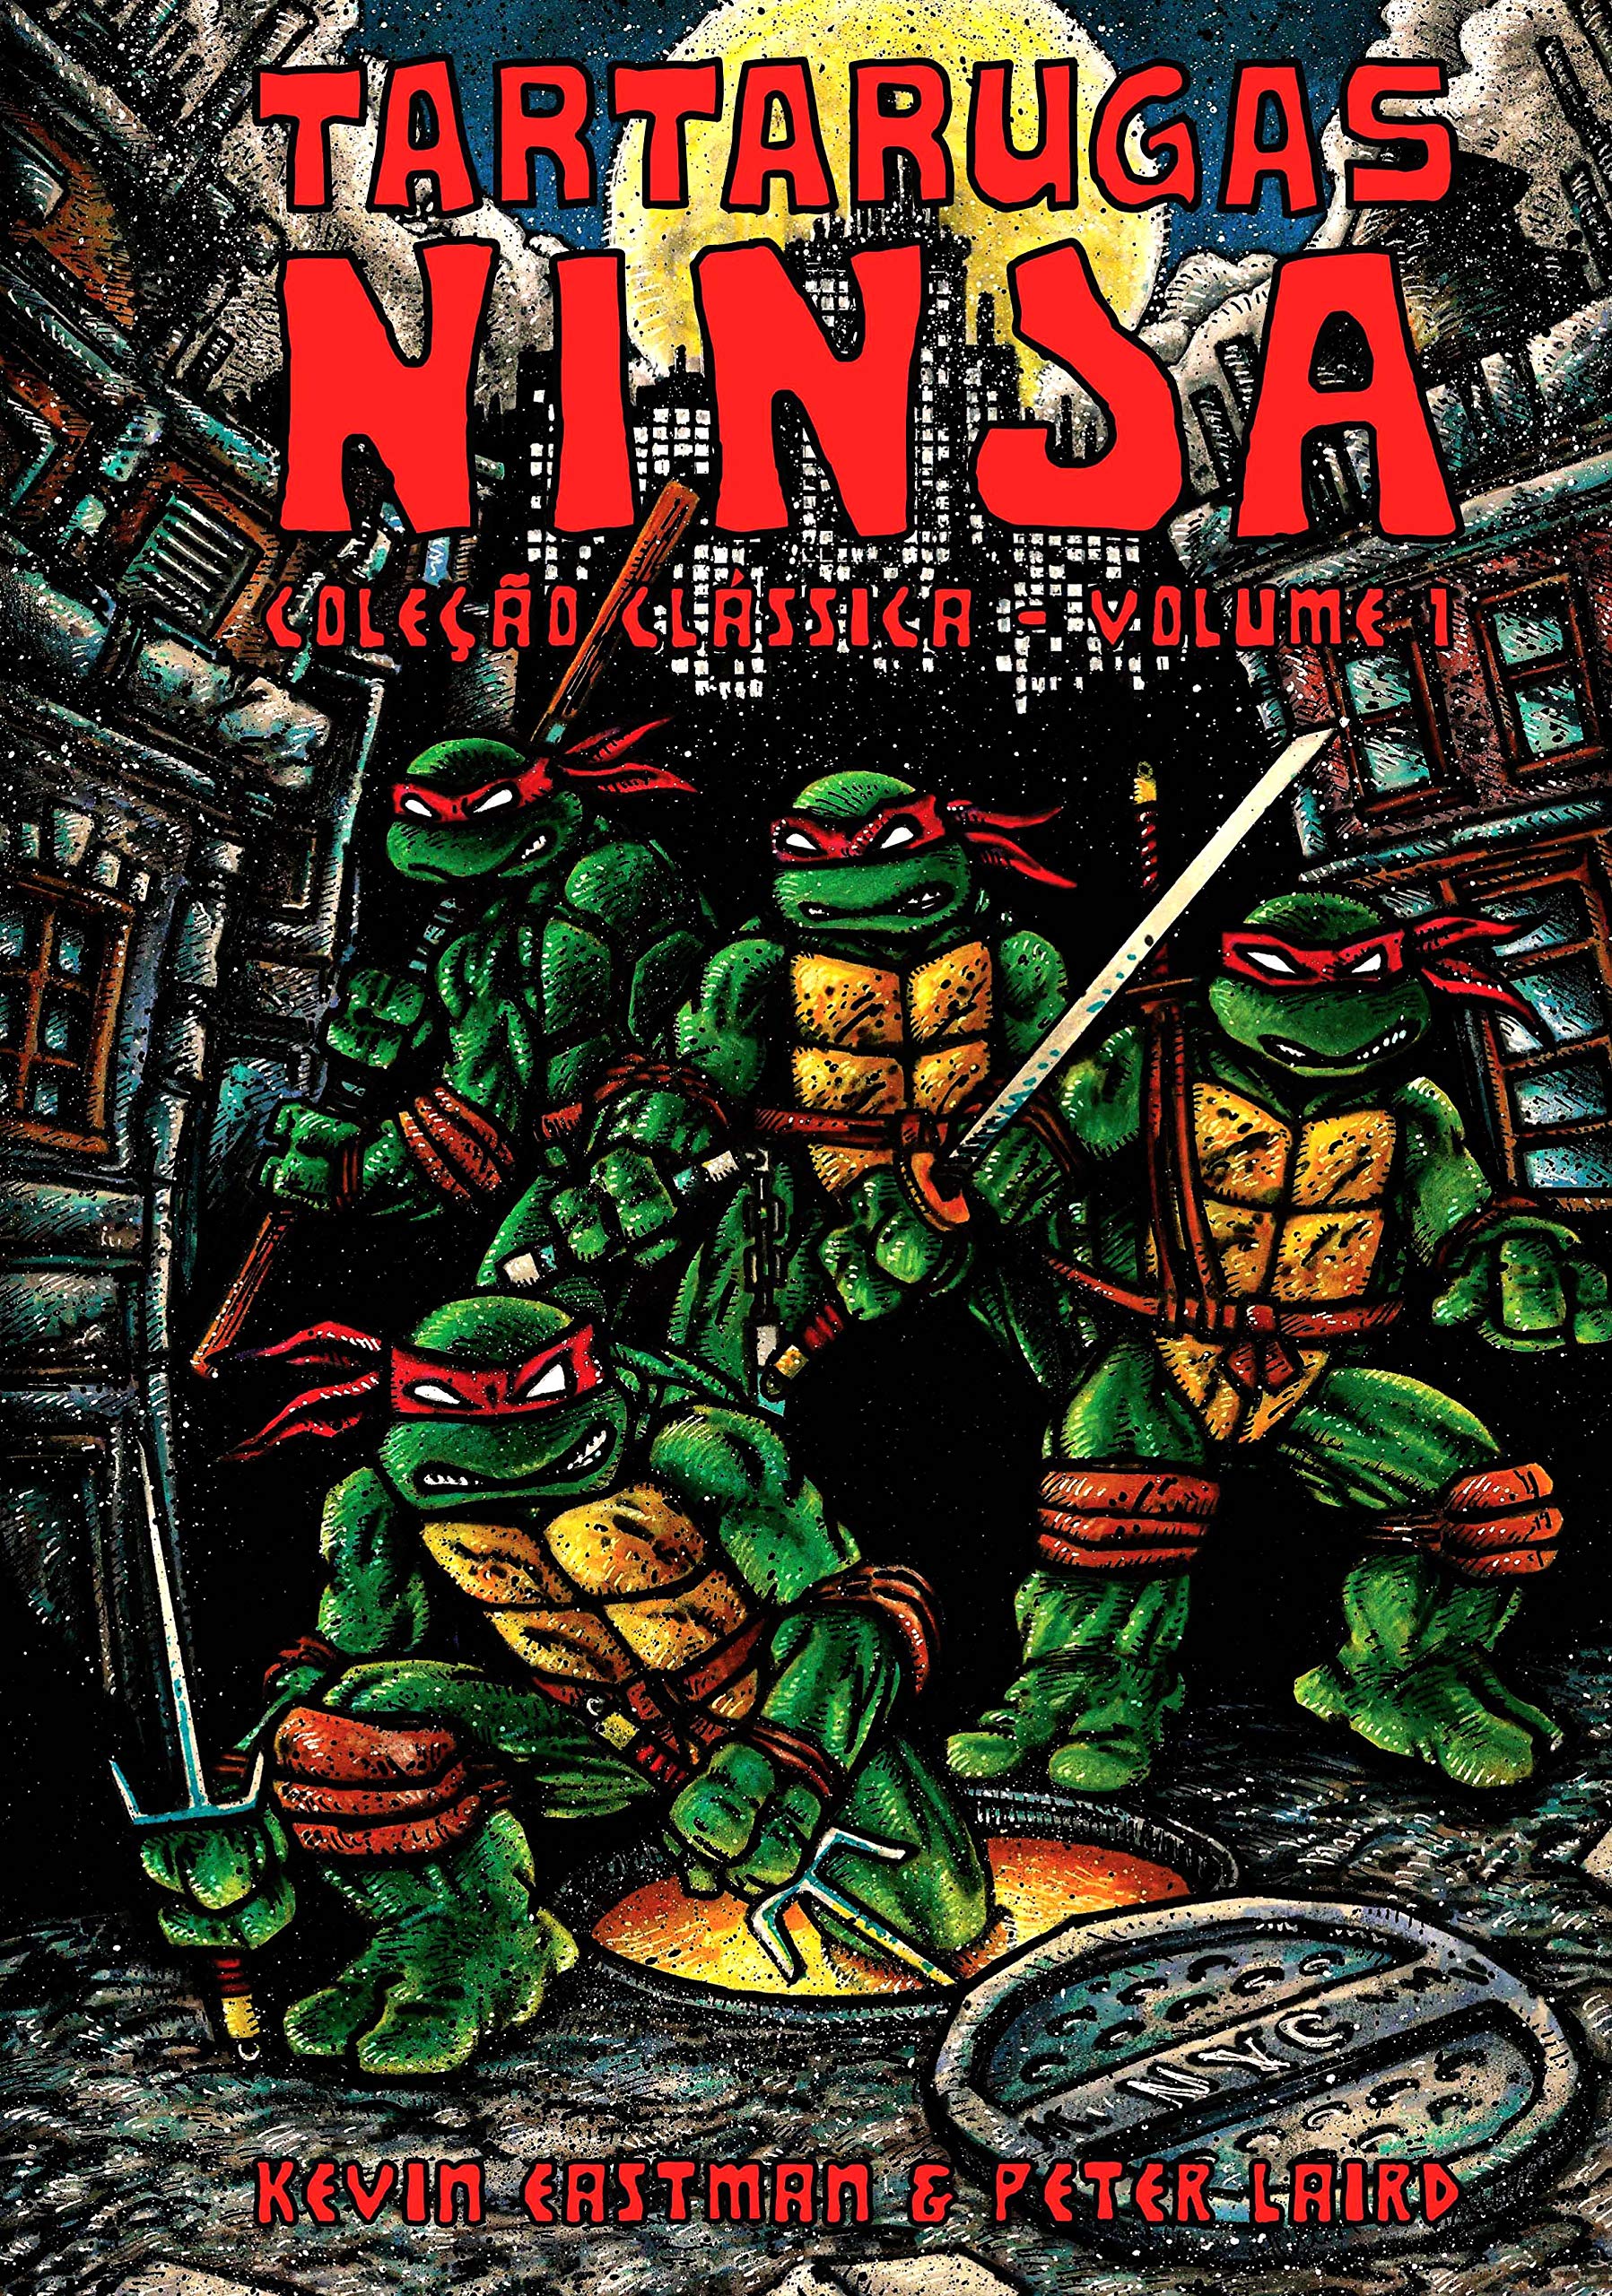 Descubra o essencial sobre as Tartarugas Ninjas - Aficionados